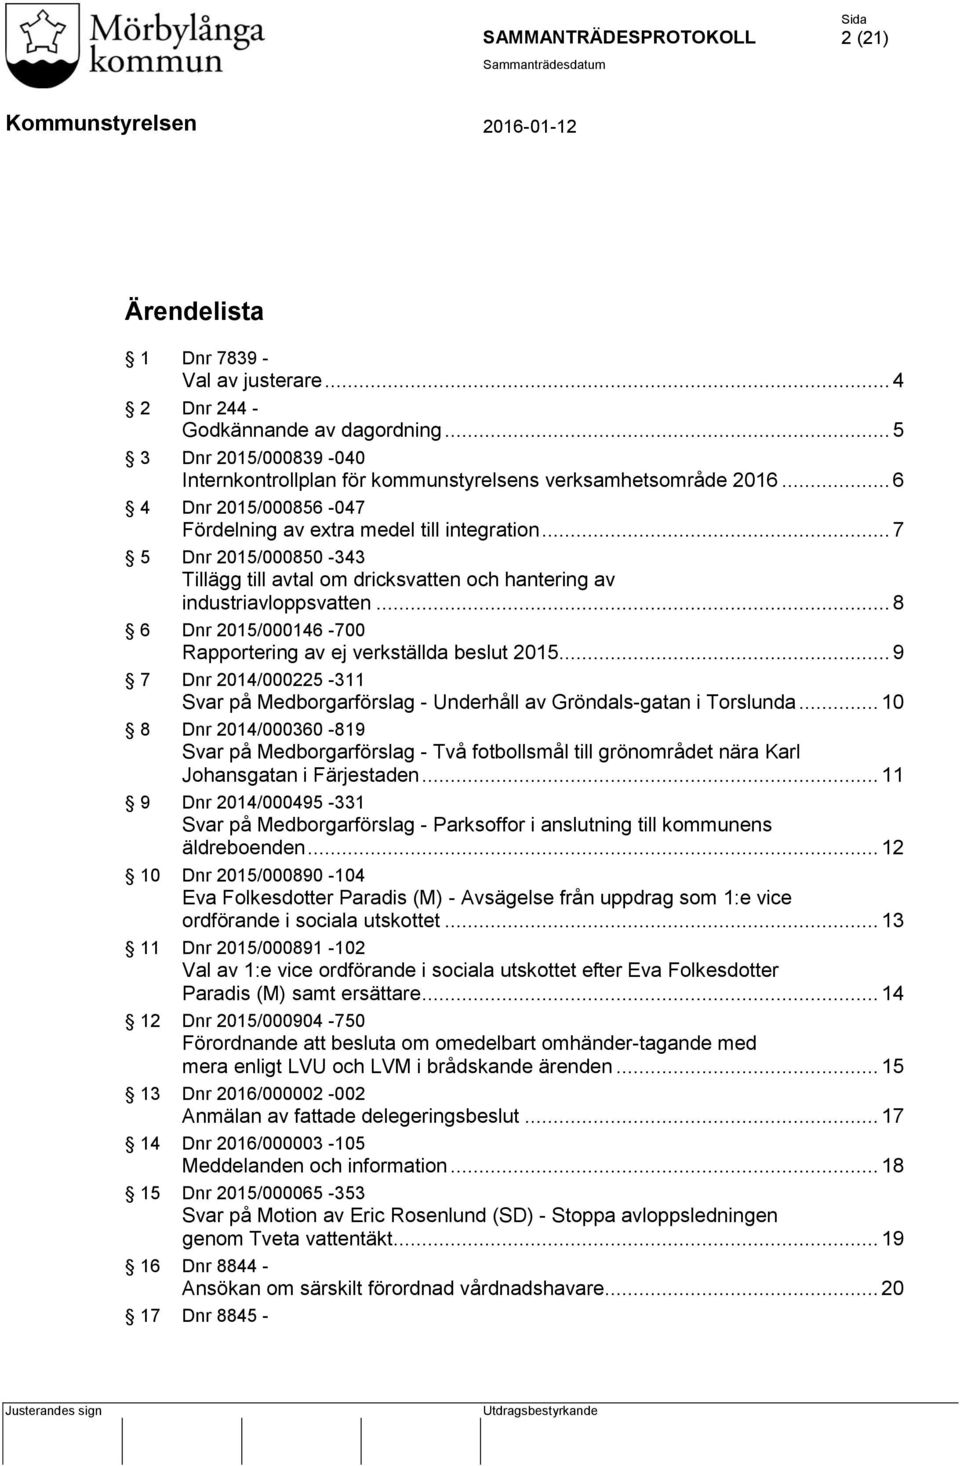 .. 8 6 Dnr 2015/000146-700 Rapportering av ej verkställda beslut 2015... 9 7 Dnr 2014/000225-311 Svar på Medborgarförslag - Underhåll av Gröndals-gatan i Torslunda.